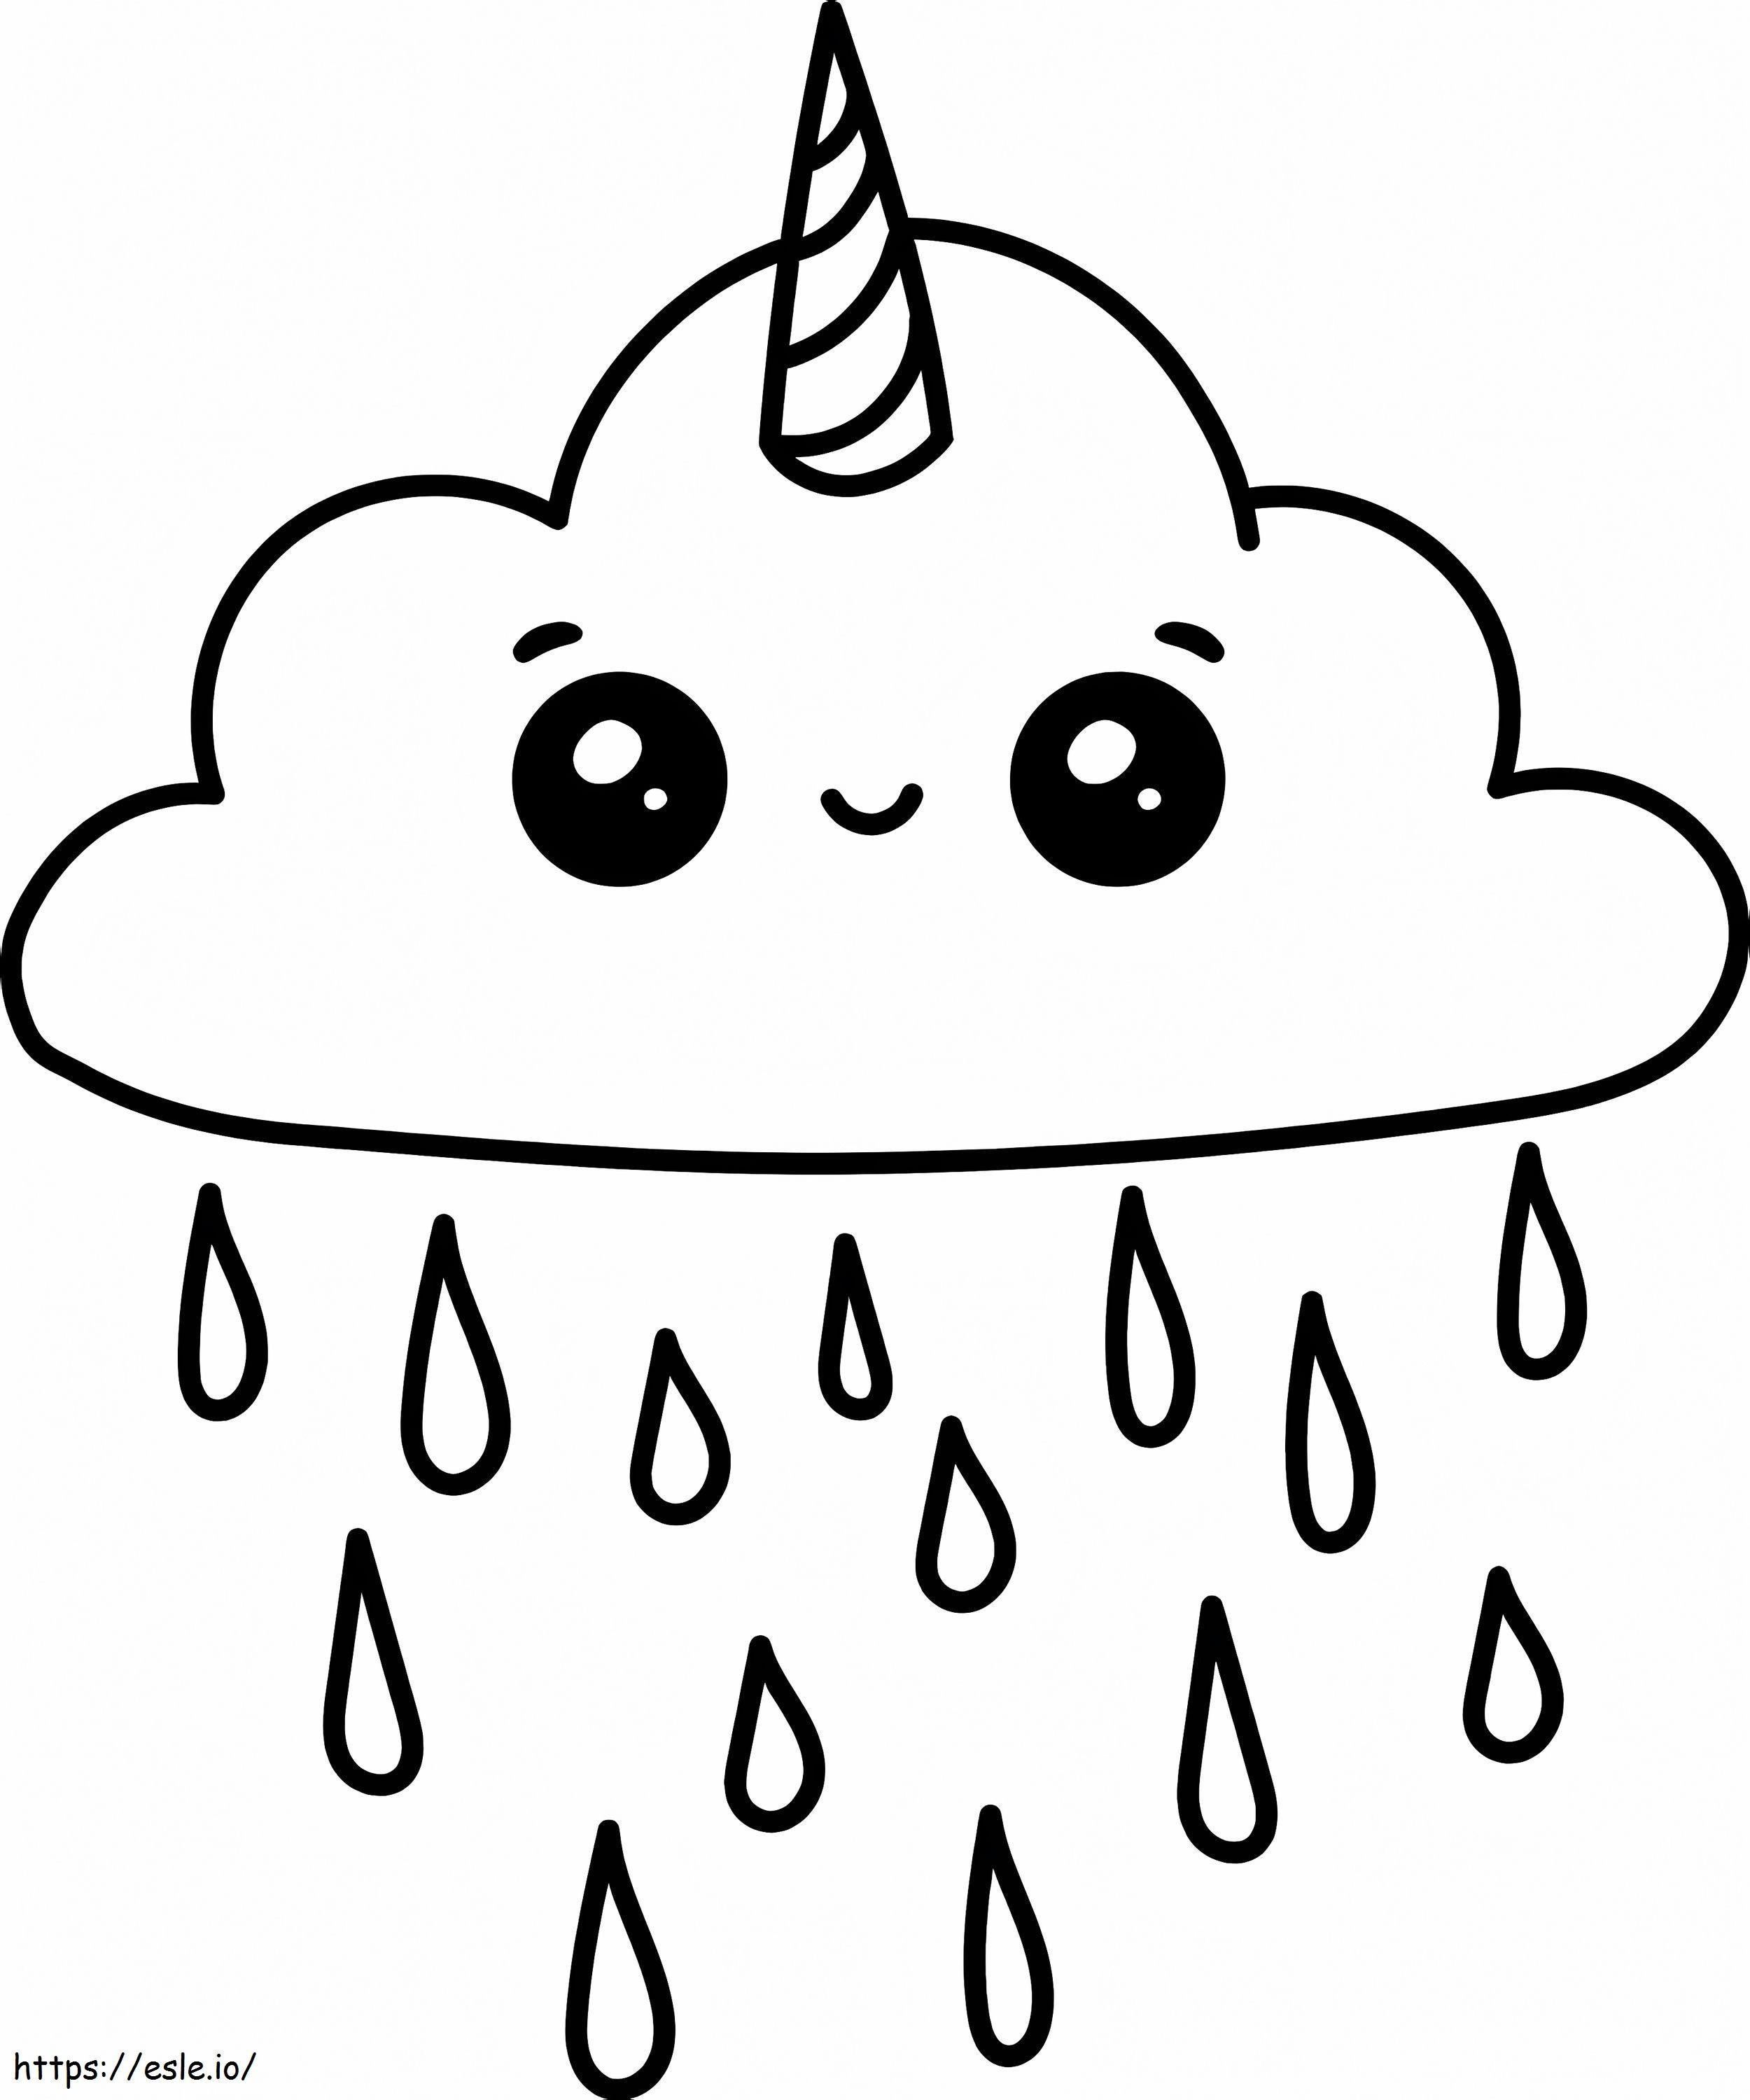 Adorable Rain Cloud coloring page